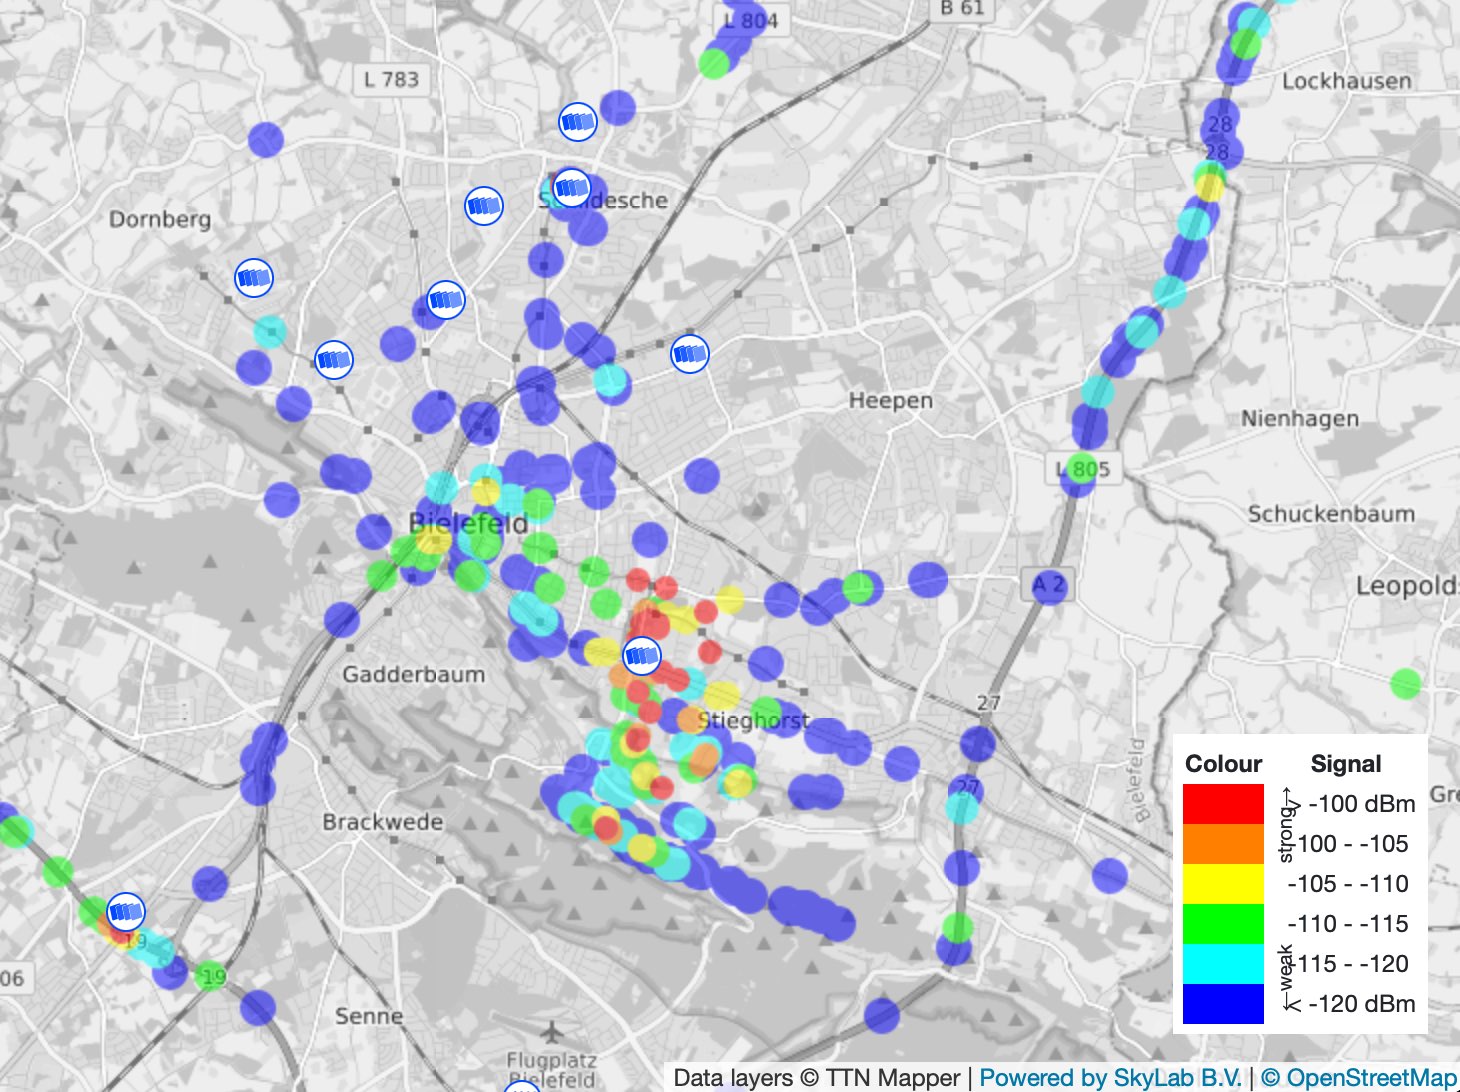 Kartendarstellung der Stadt Bielefeld und Umgebung. Mit farbigen Markierungen ist der Empfang von Datenpaketen über The Things Network eingezeichnet. Ein große Anzahl der Markierungen liegt im Süd-Osten der Region Bielefeld.